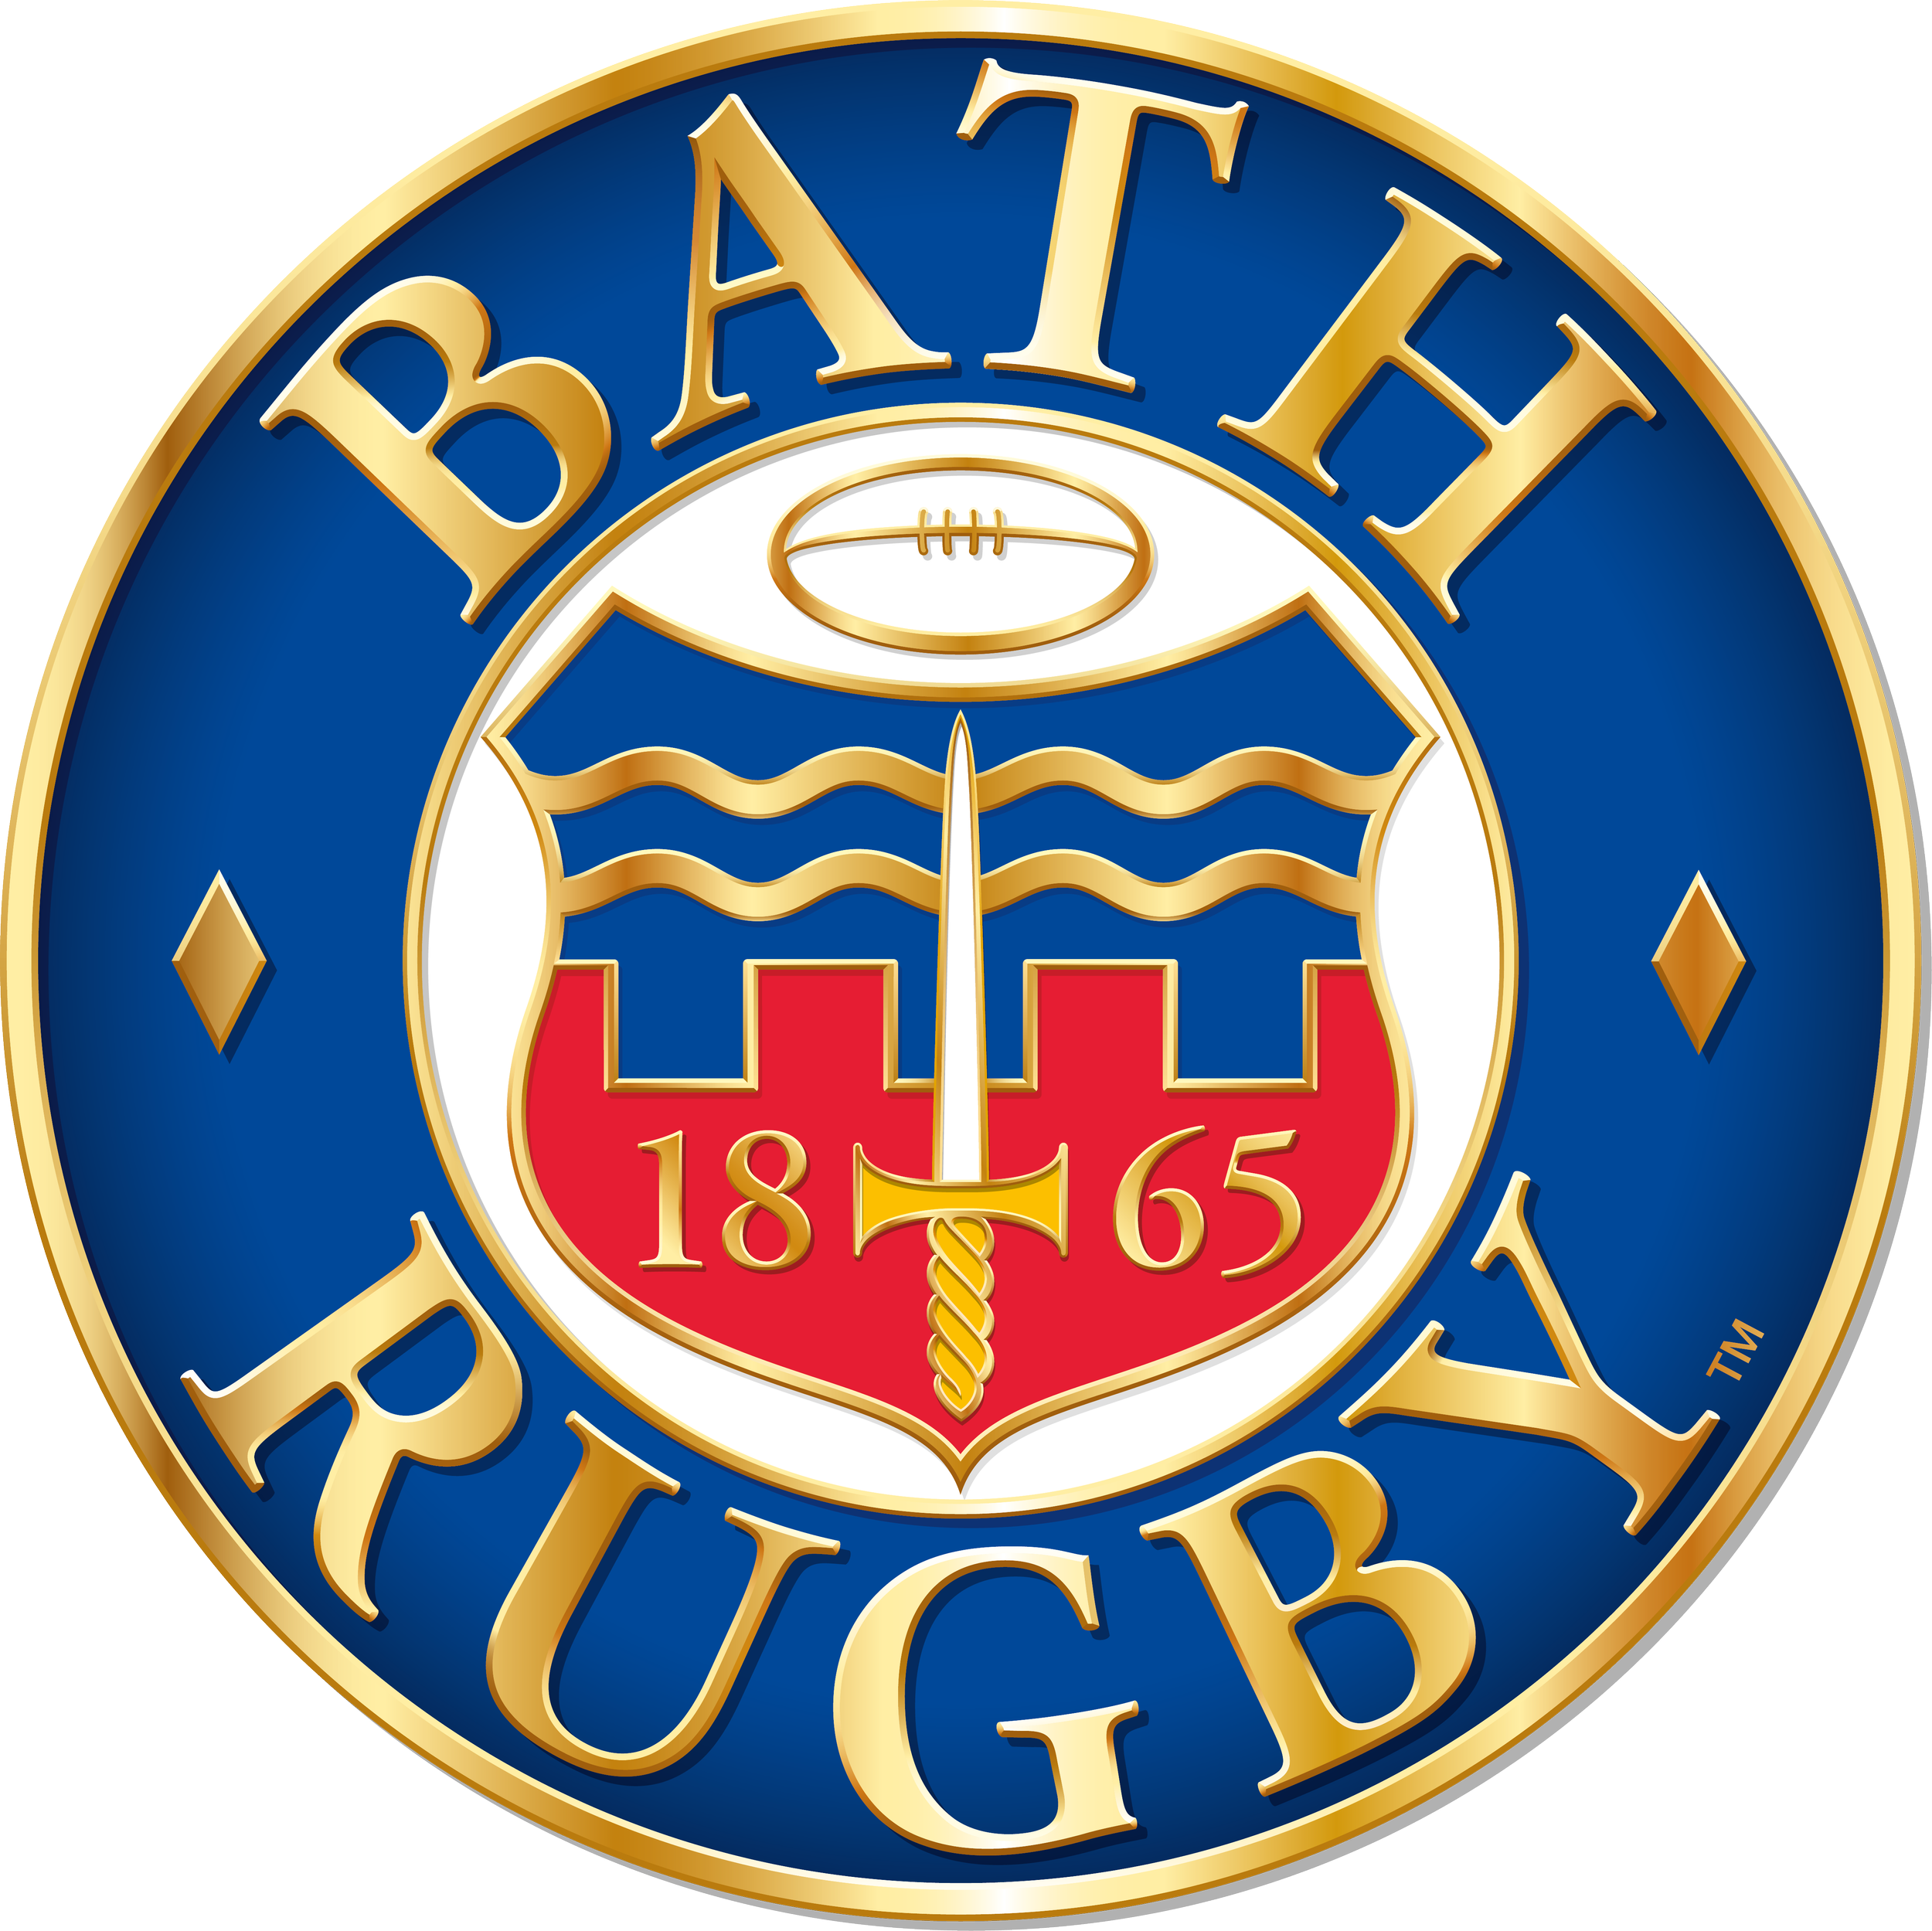 Bath Rugby CMYK_2015.png